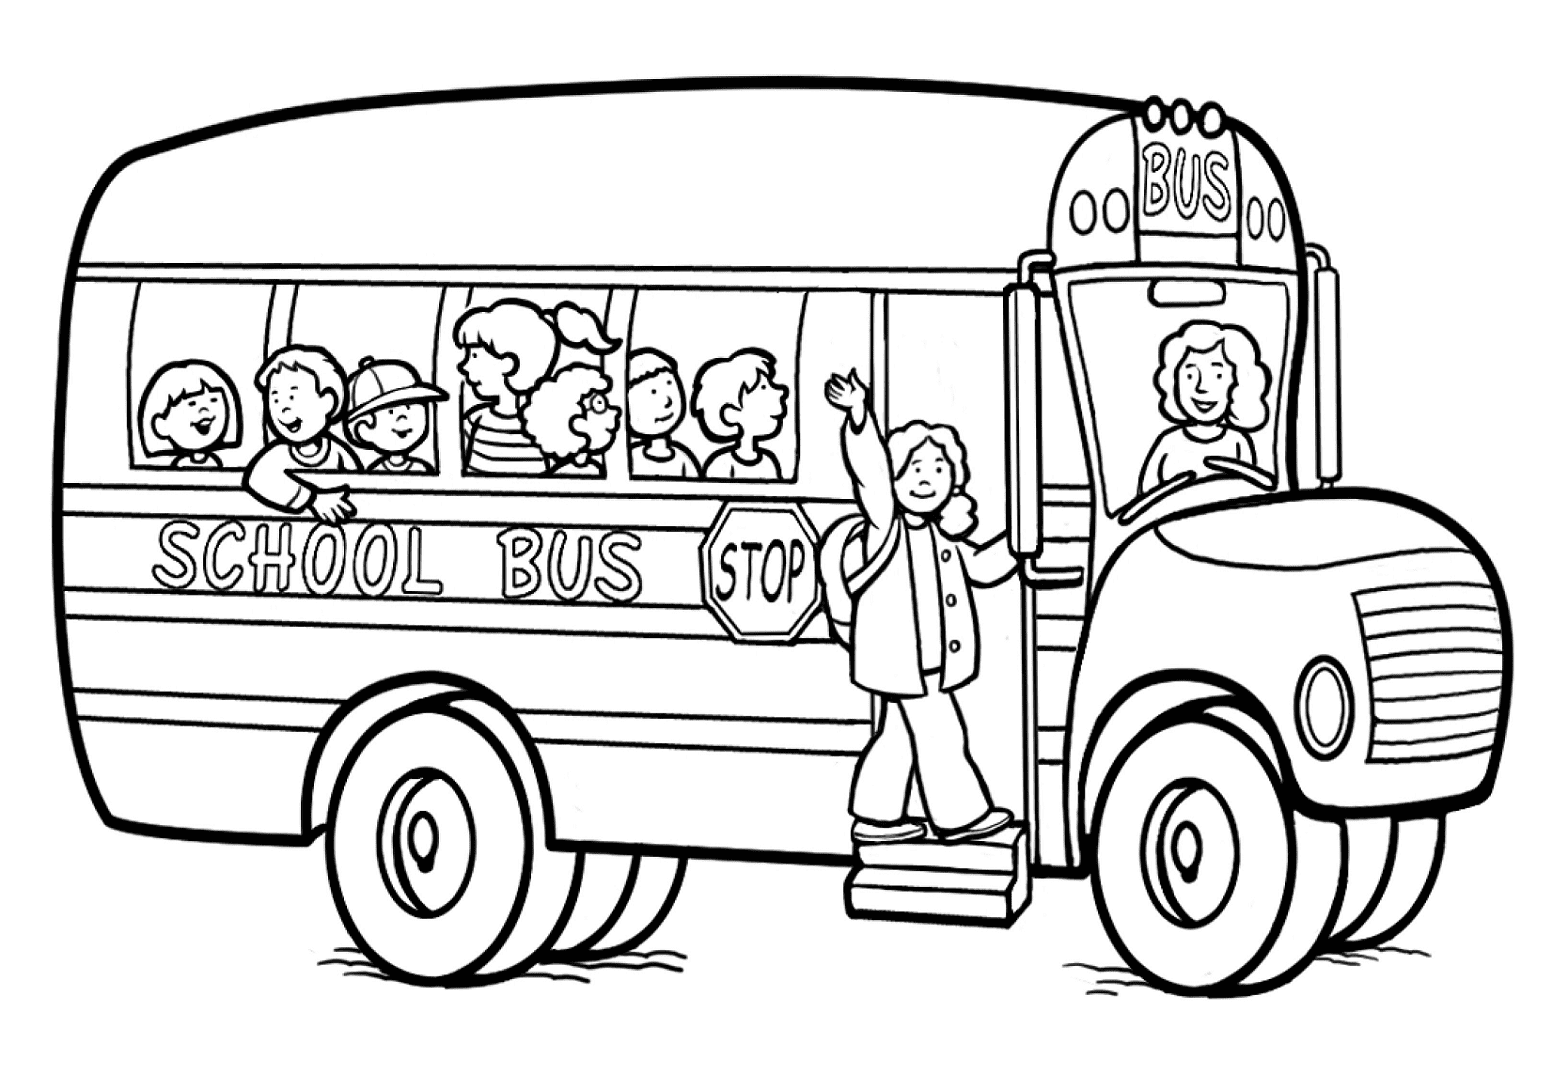 Immagine dello scuolabus dallo scuolabus